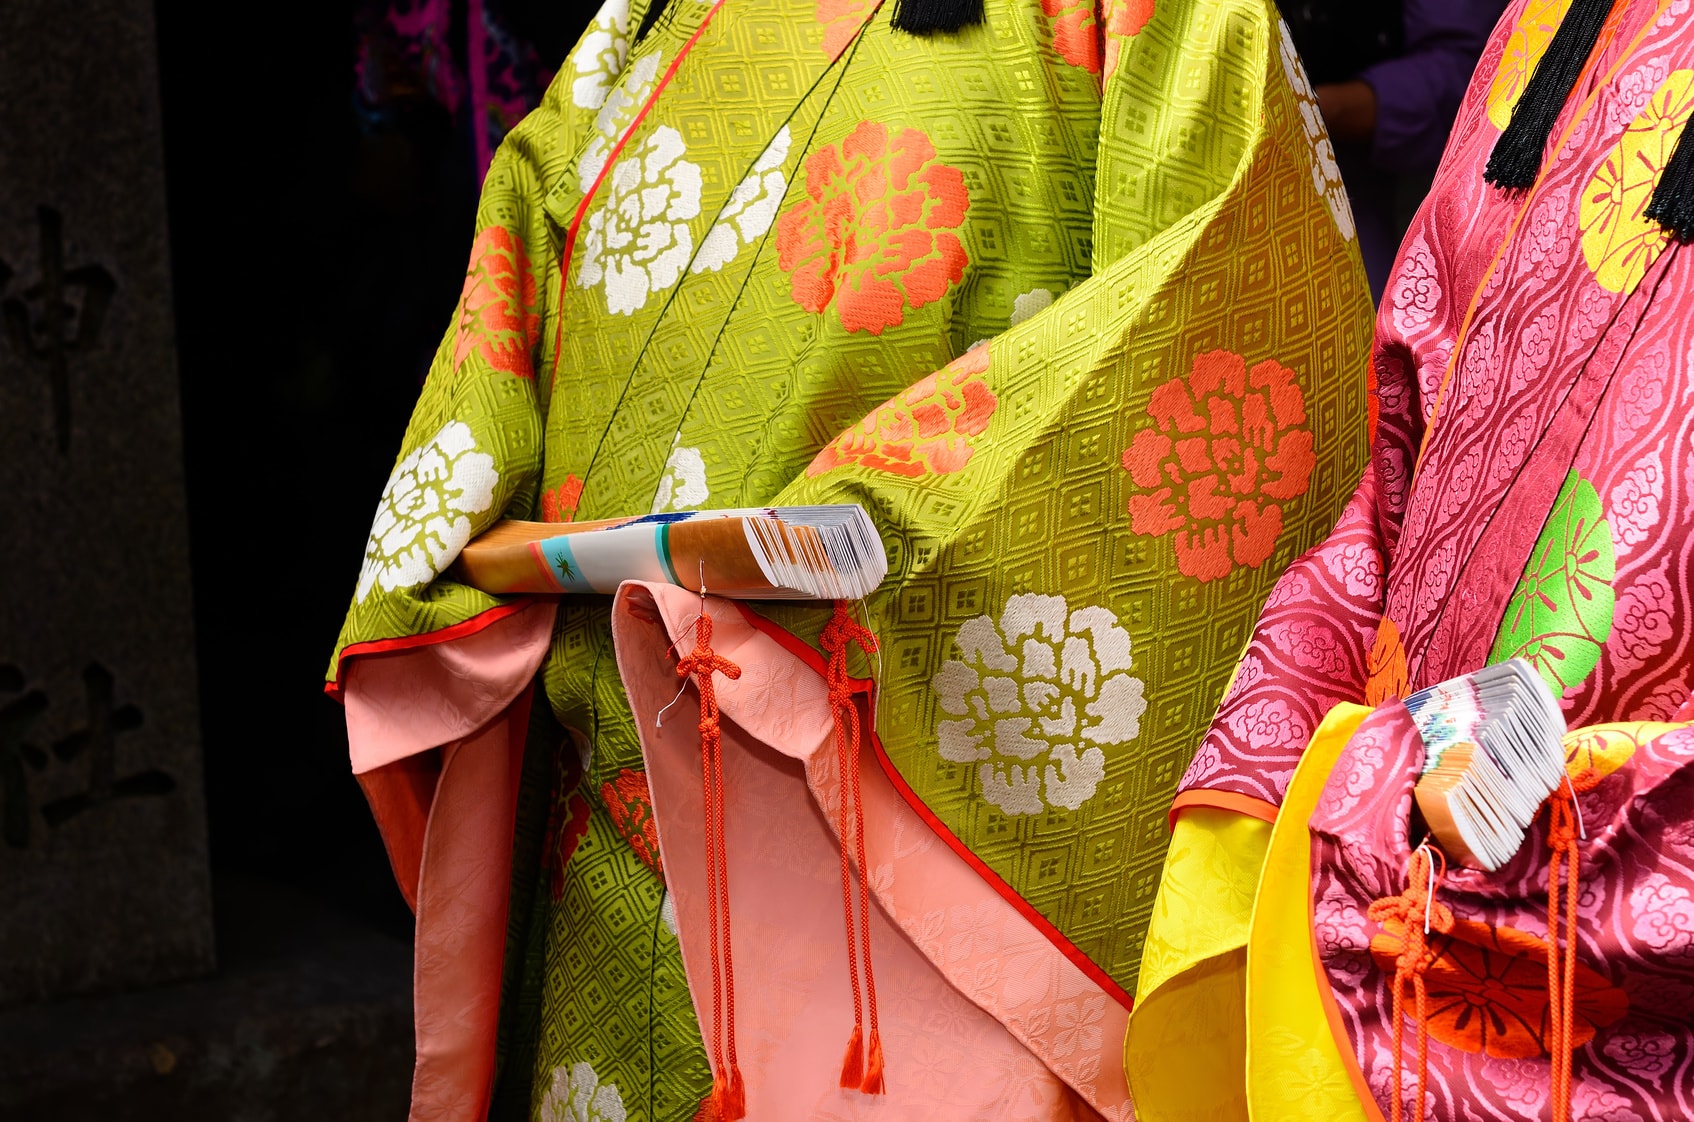 日本文化の象徴 着物の歴史や起源を解説します にほんご日和